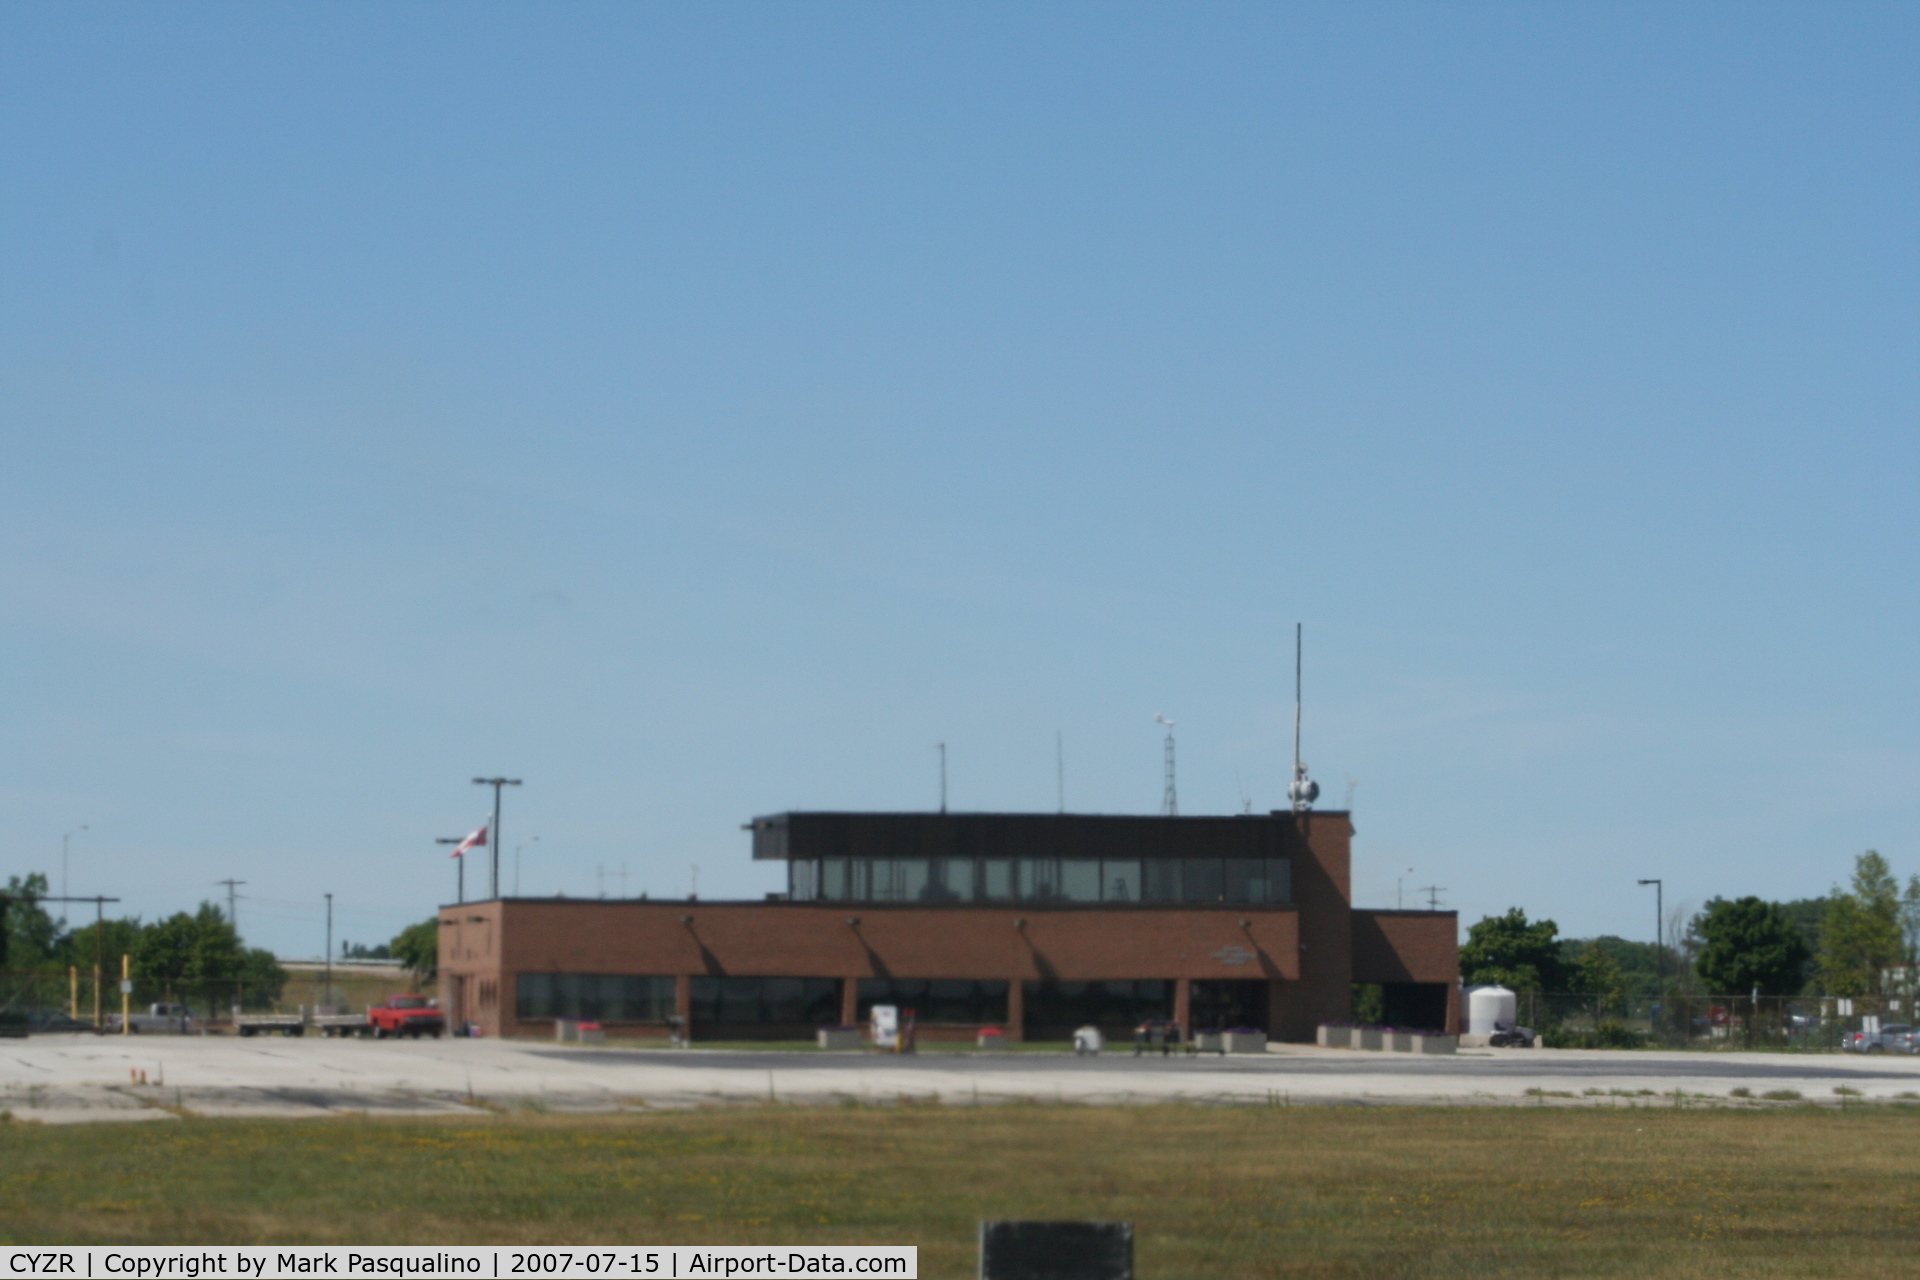 Sarnia (Chris Hadfield) Airport, Sarnia, Ontario Canada (CYZR) - Main Terminal